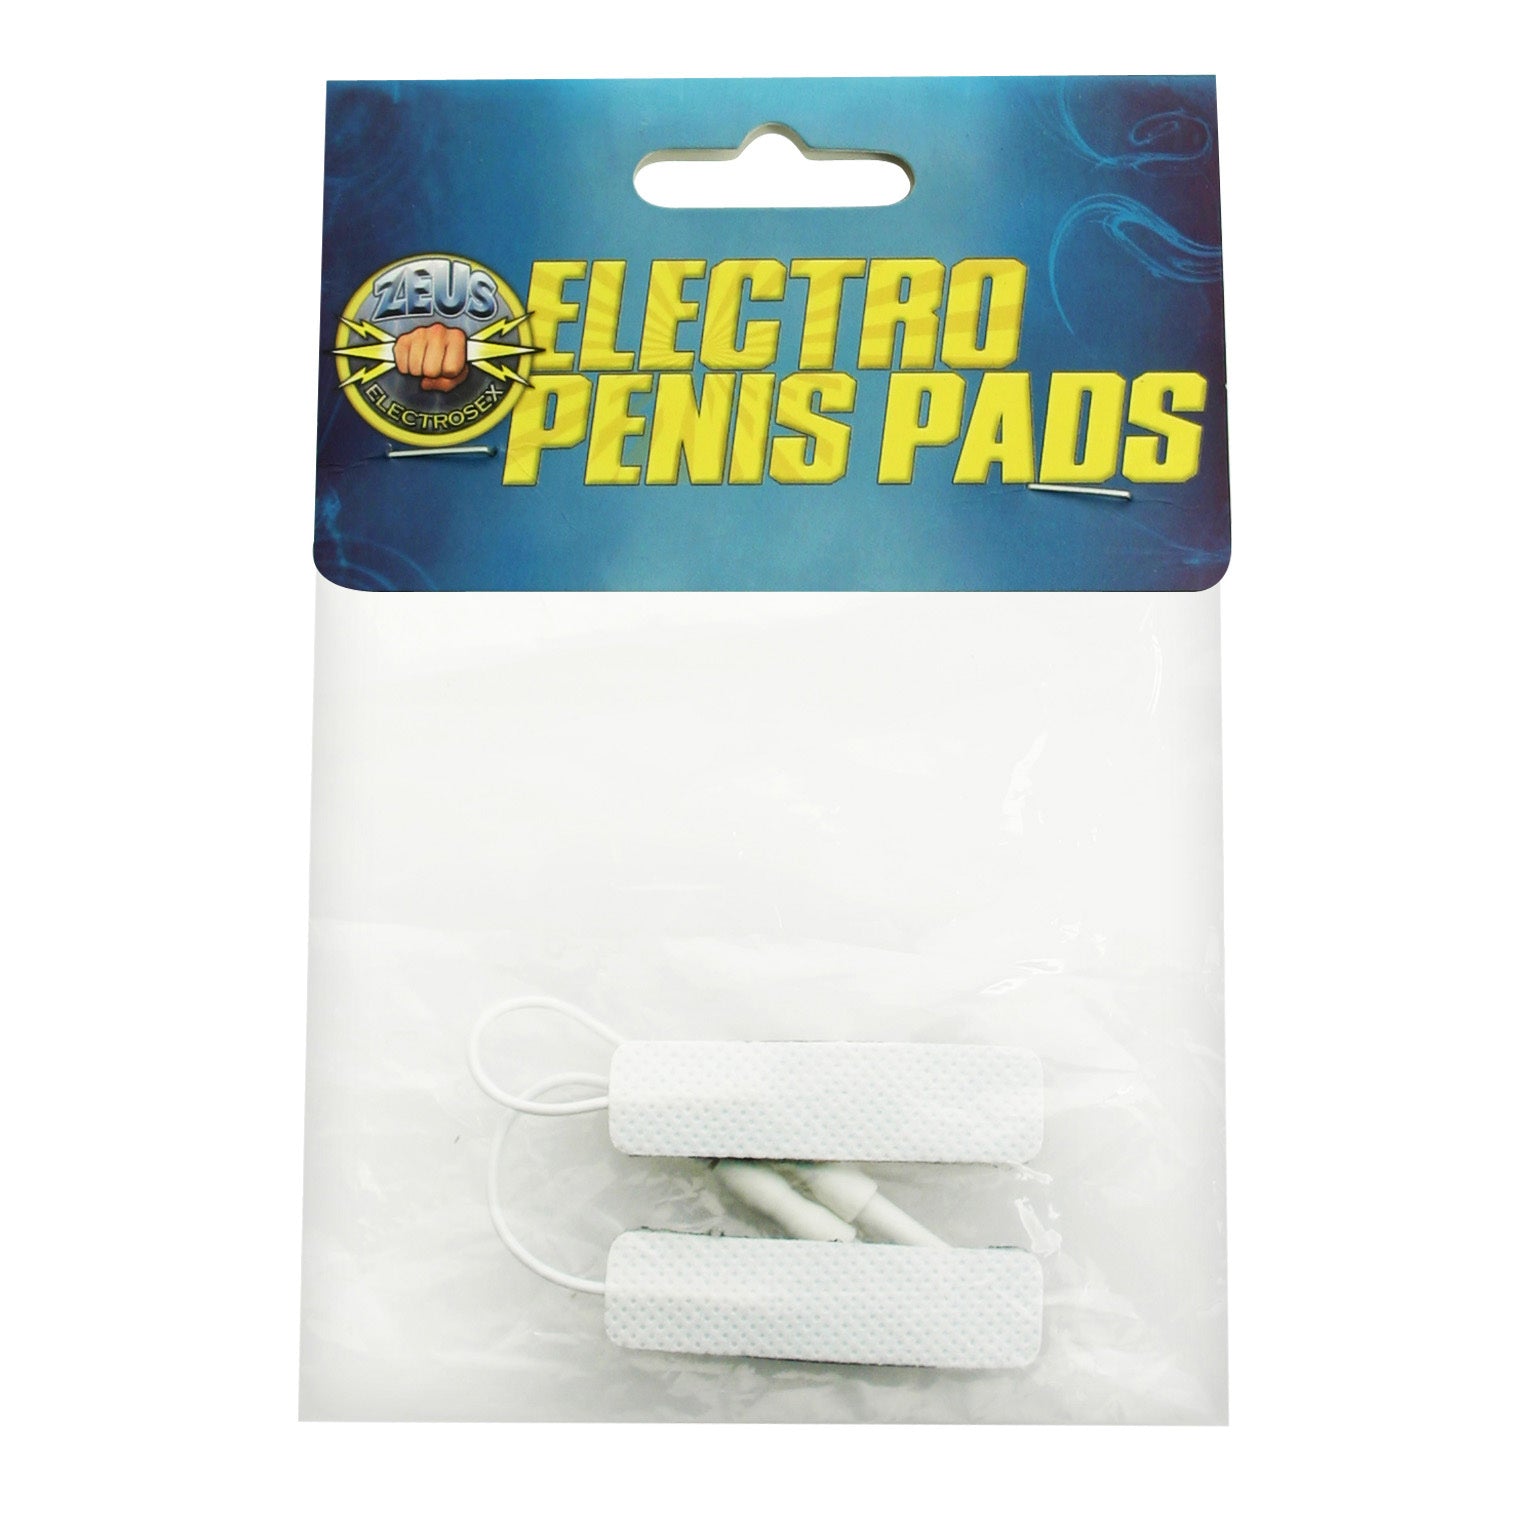 Zeus Electrode Penis Pads - UABDSM